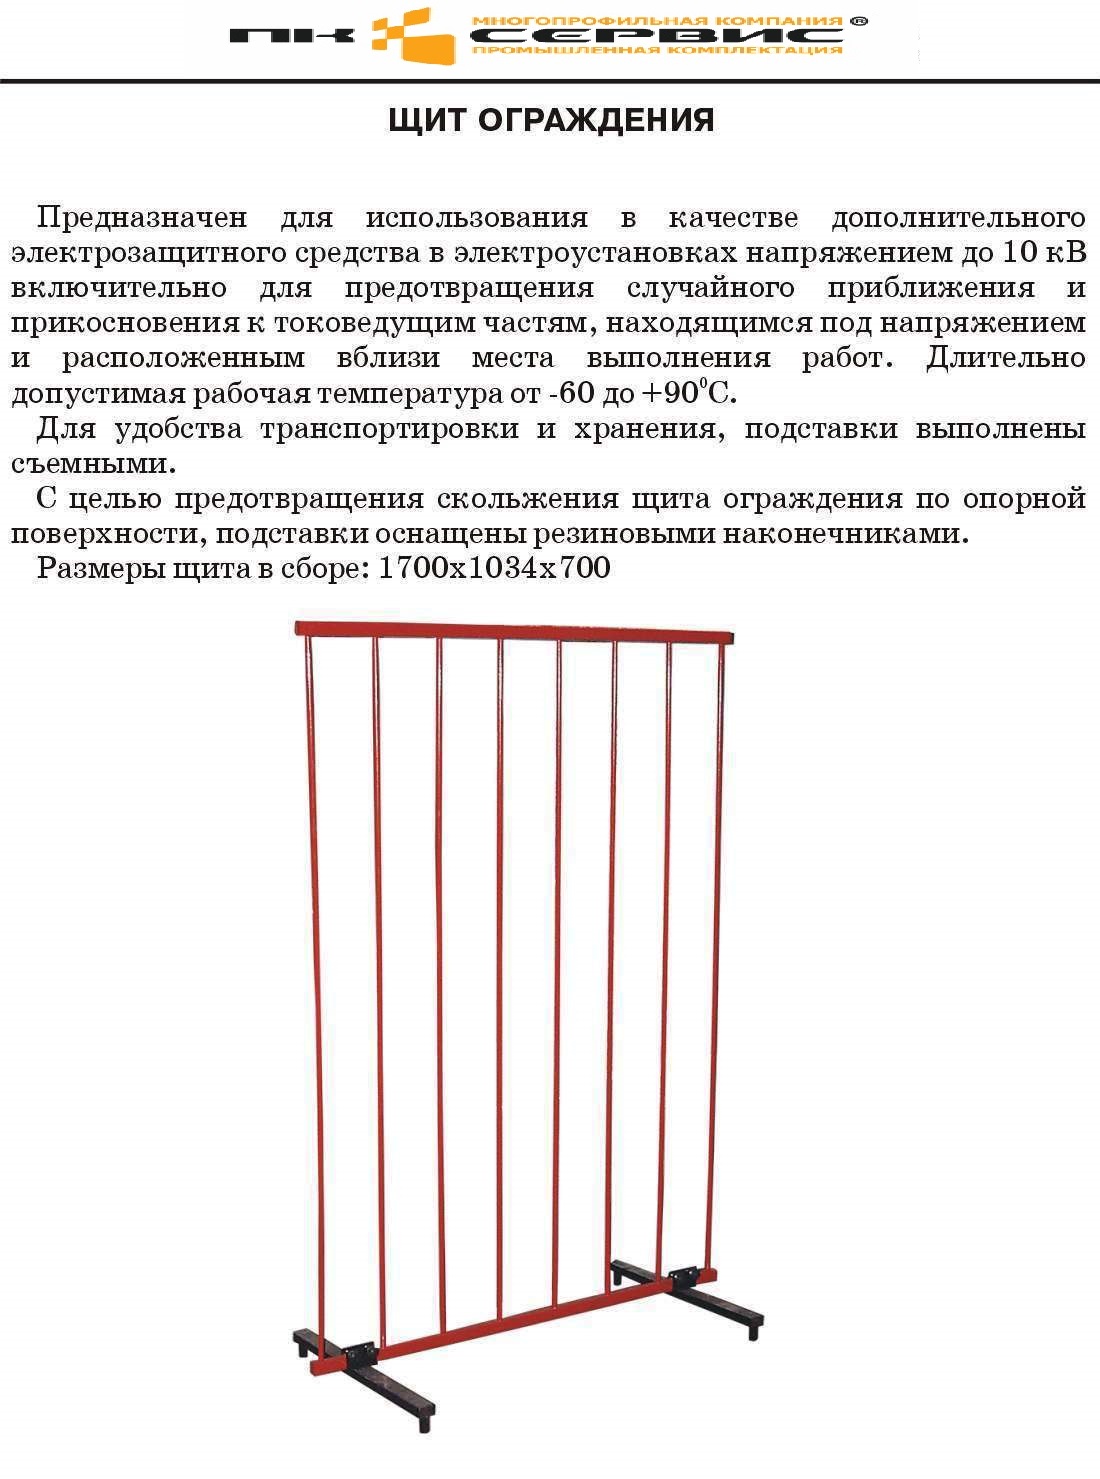 Ограждающие устройства отопительных приборов должны быть выполнены из  материалов по санпину (Большое количество фото) - obzorstroi.ru